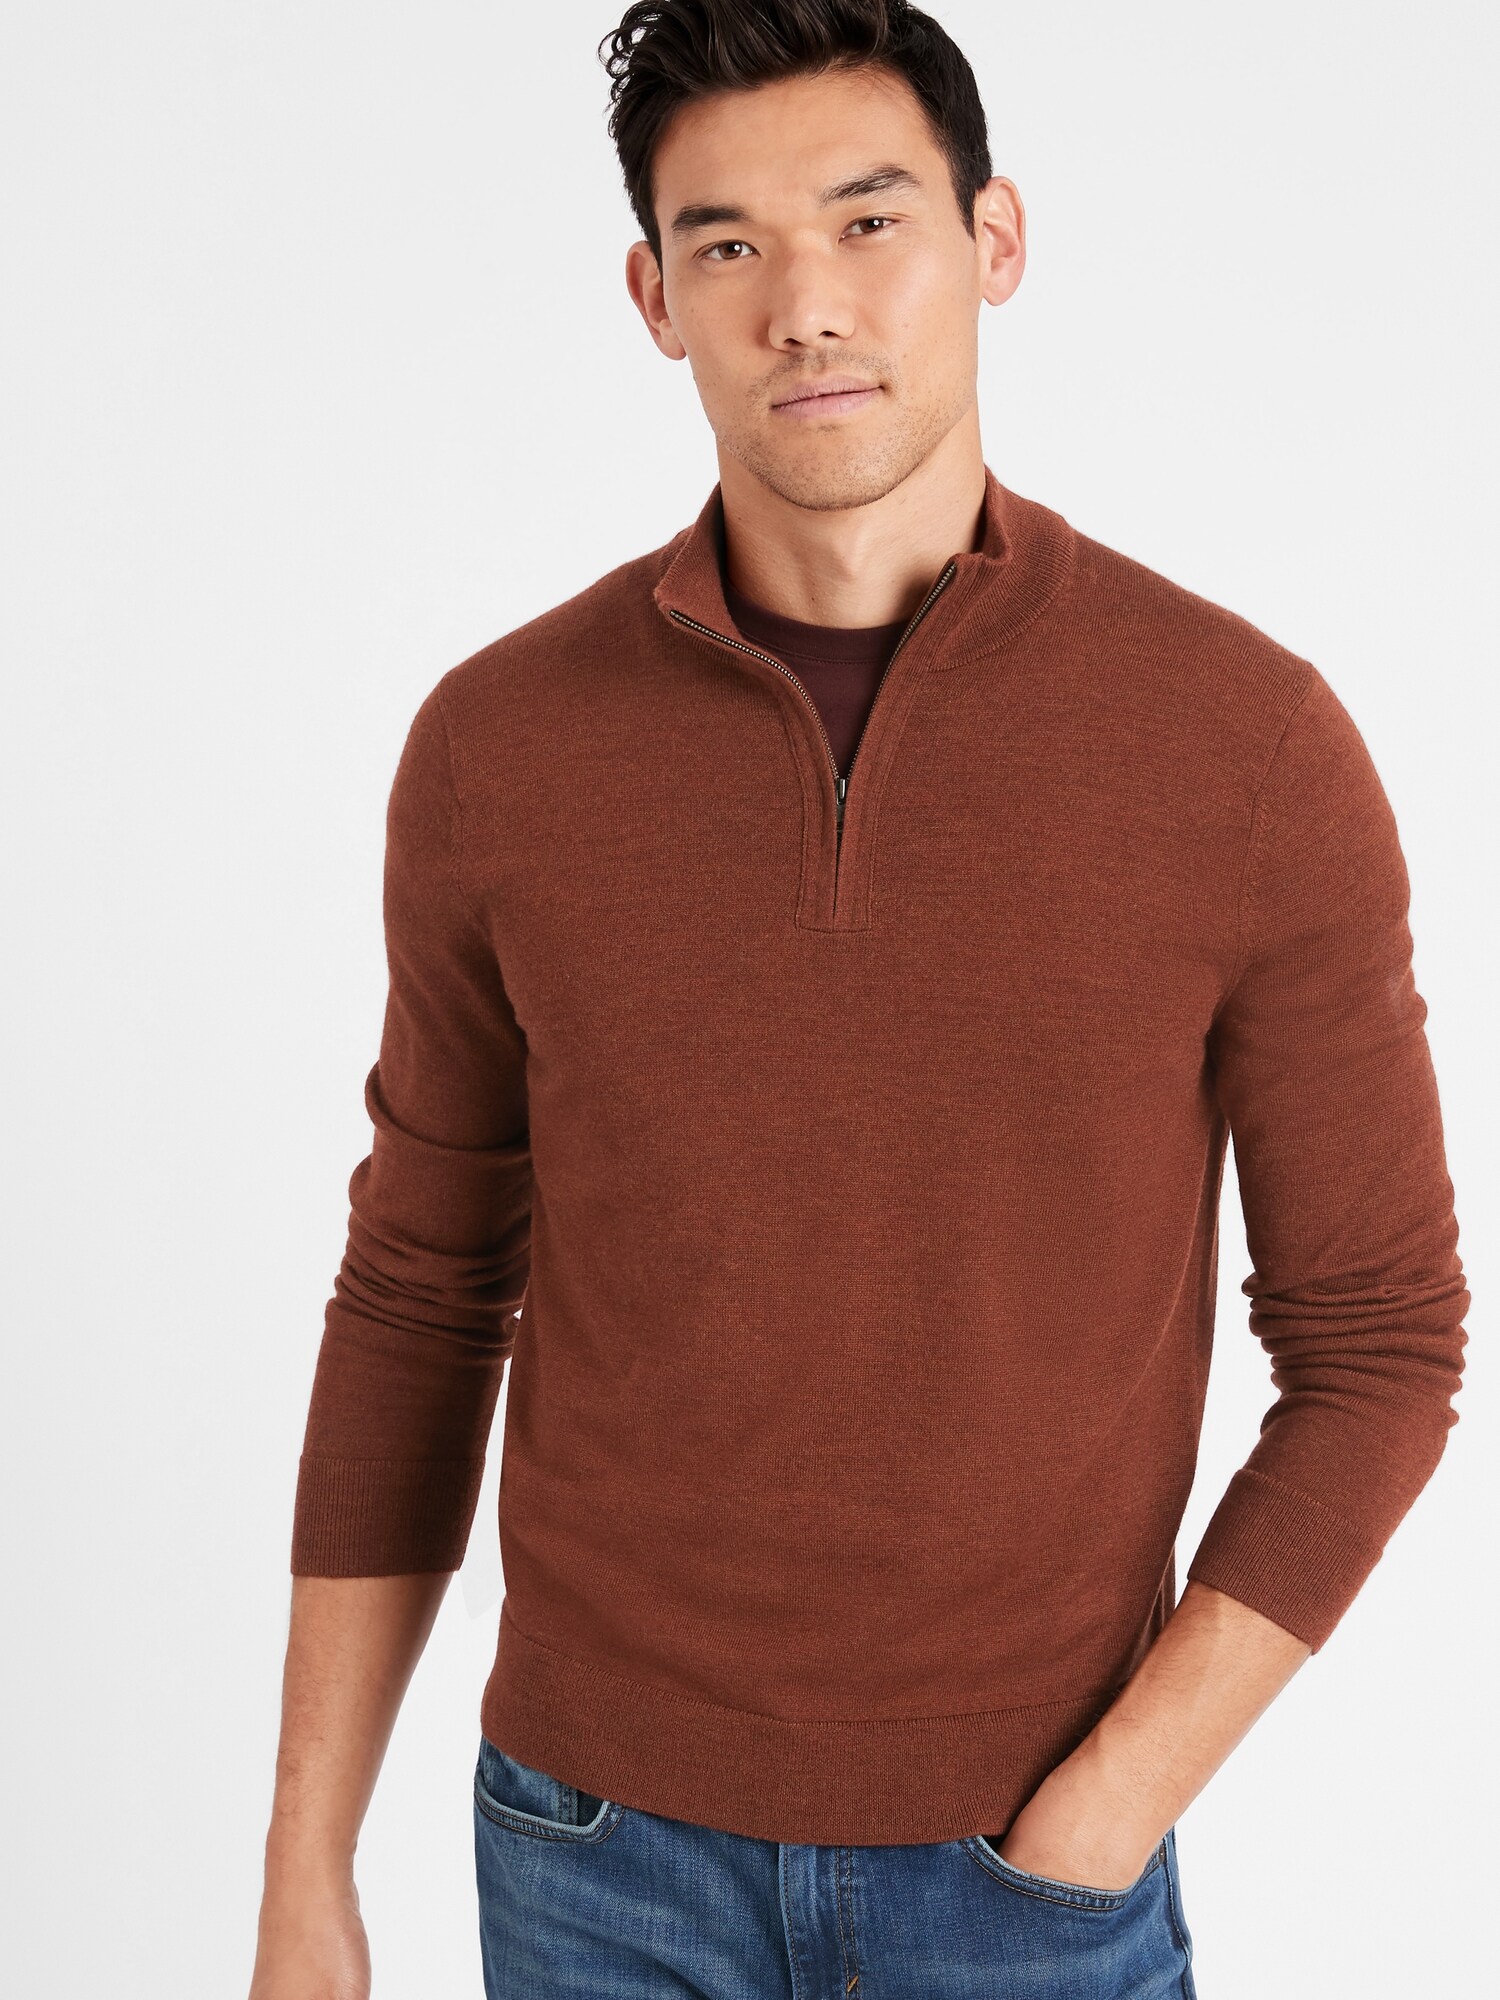 Merino Half-Zip Sweater